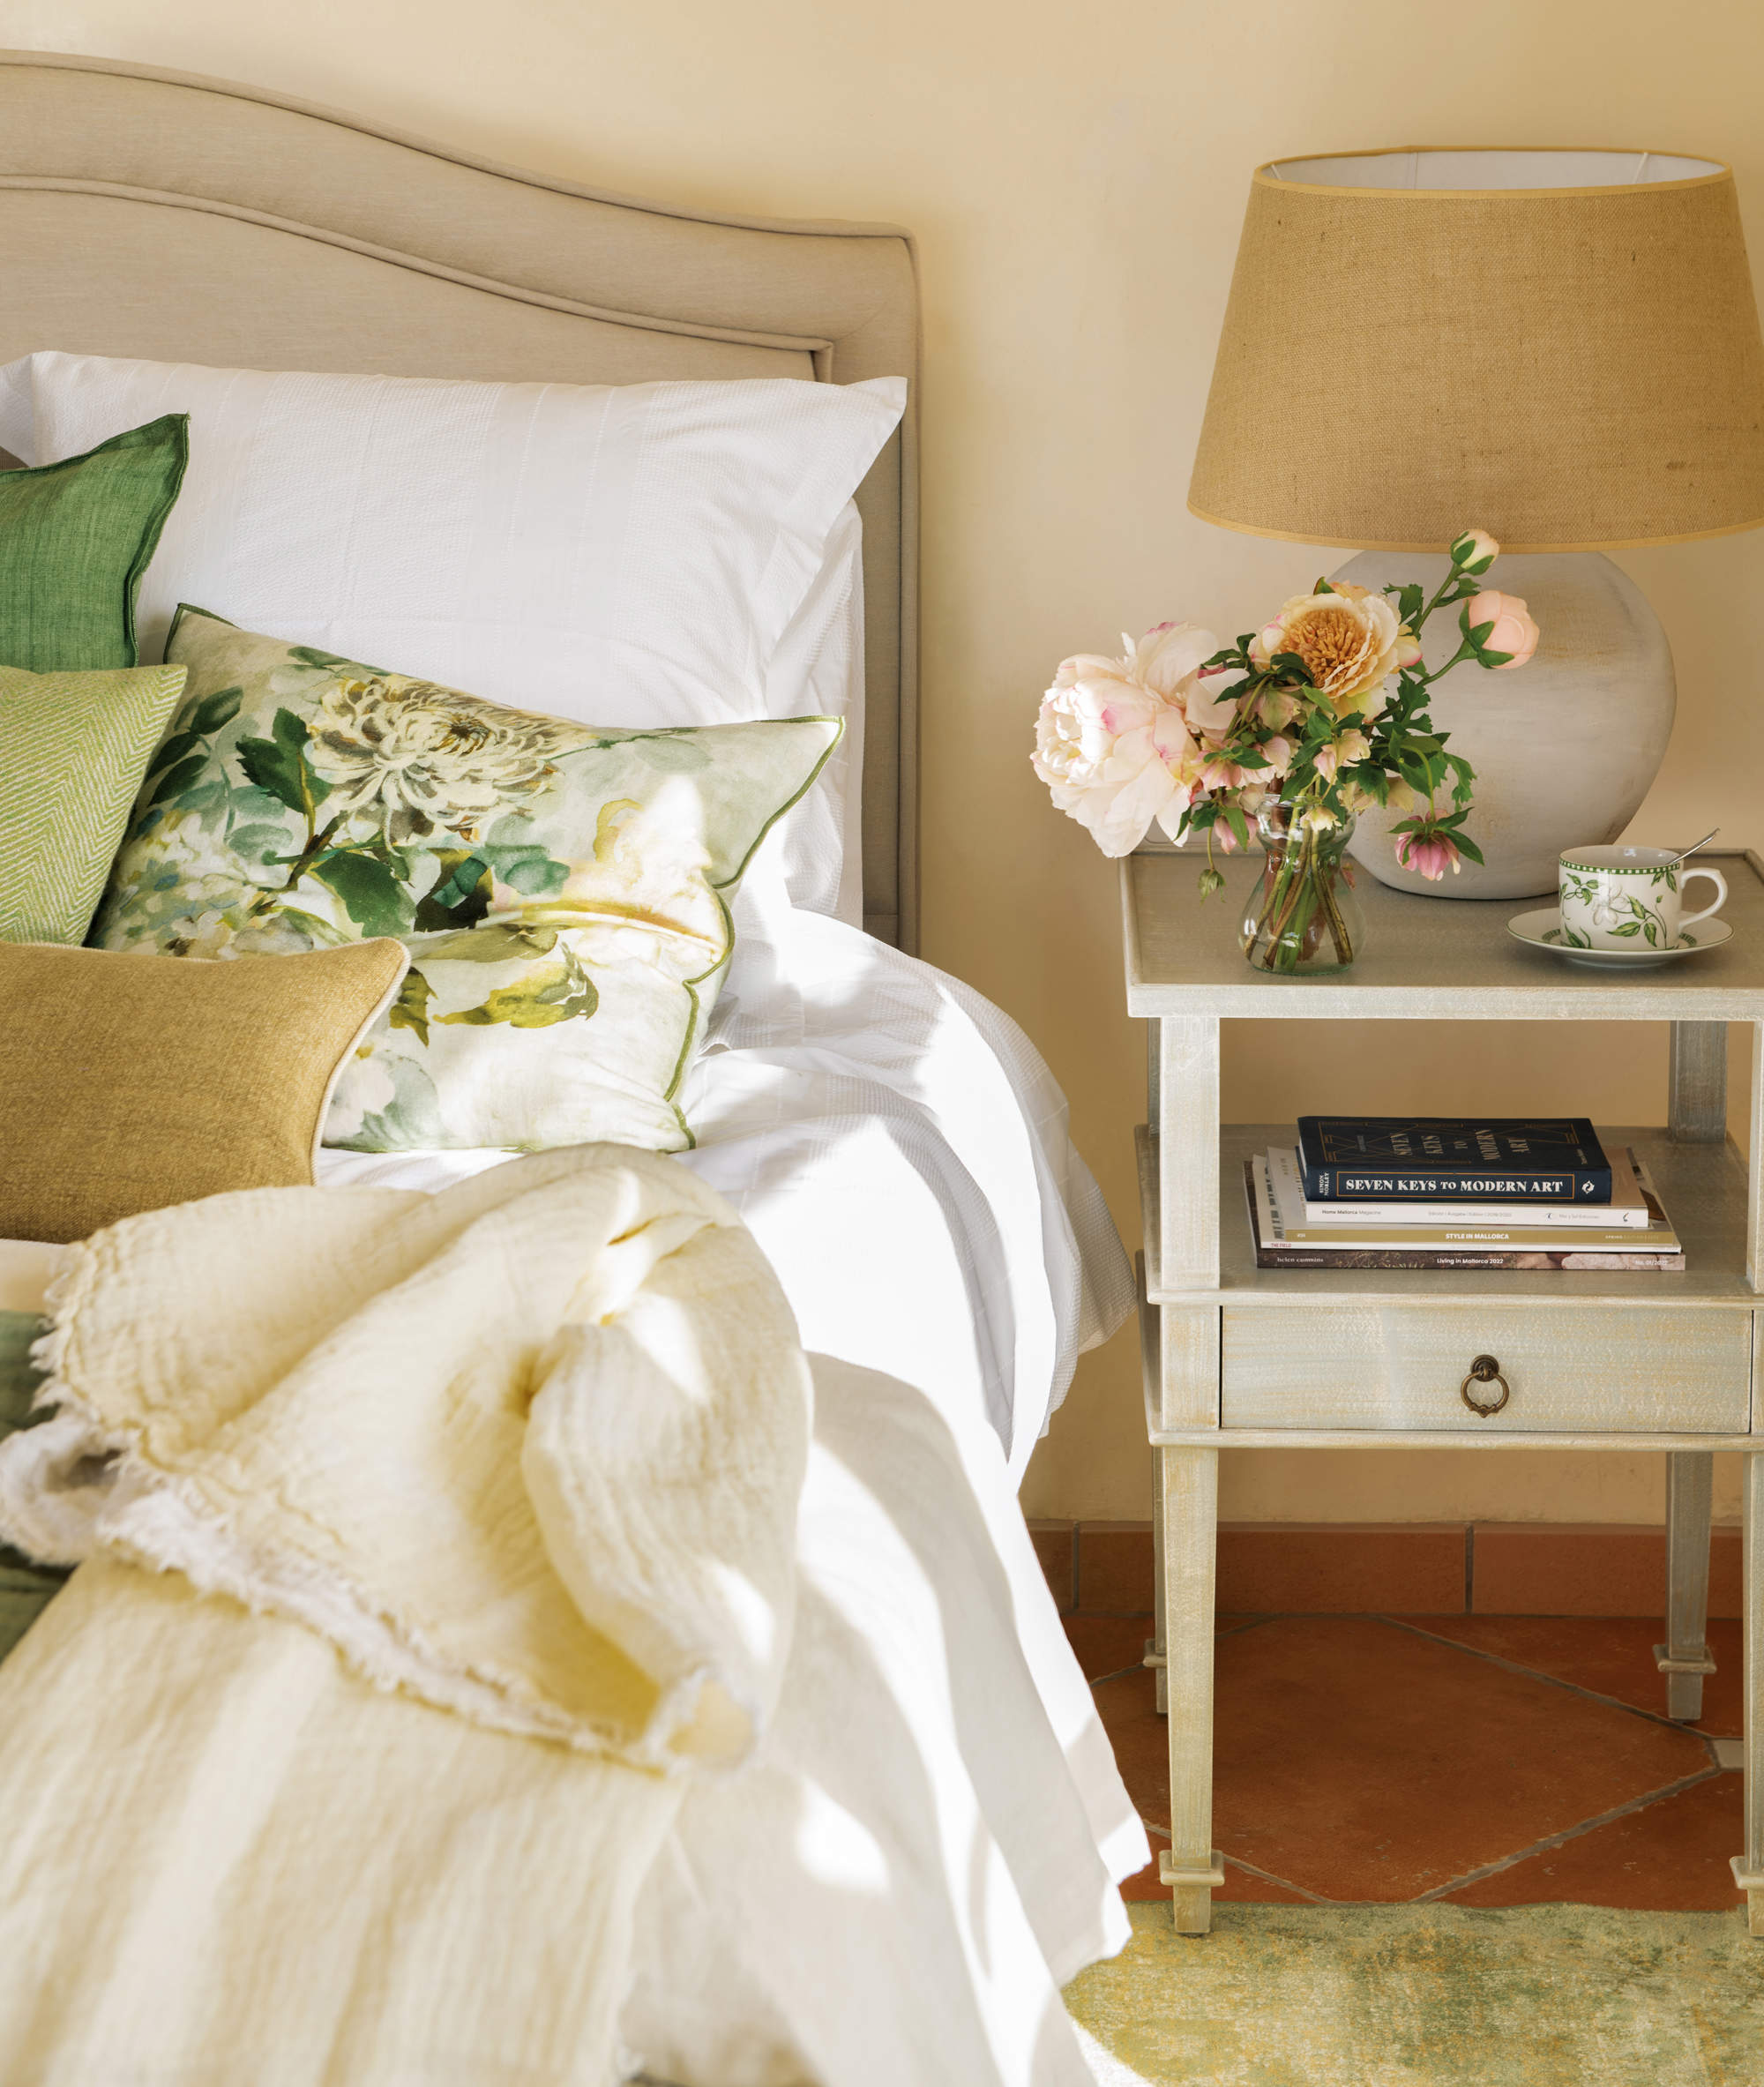 Dormitorio de estilo clásico con cojines lisos y estampado con flores.